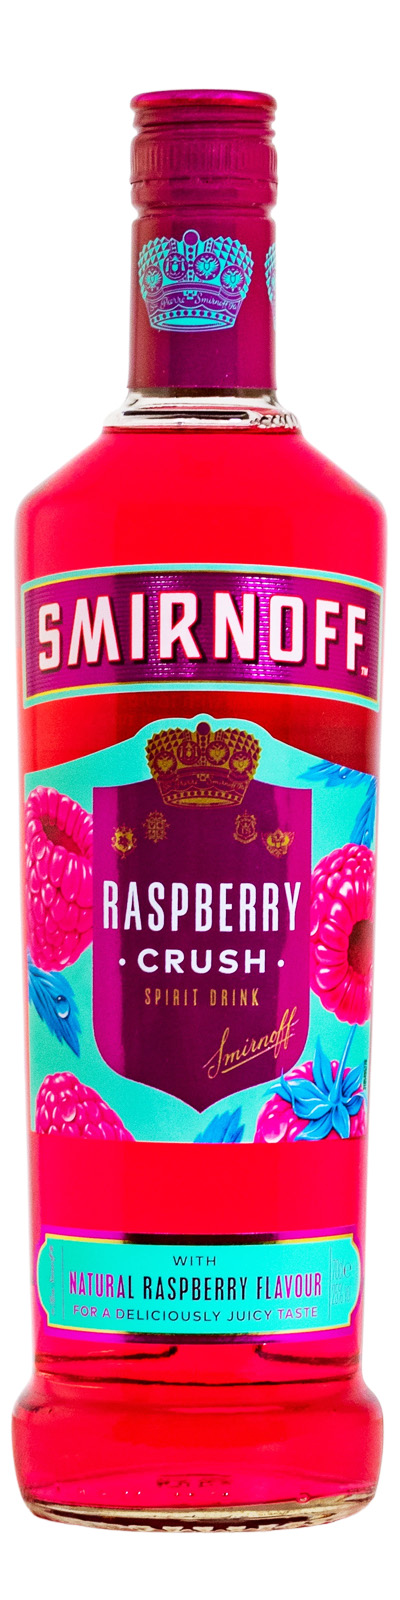 Raspberry Smirnoff Flavoured günstig kaufen Crush